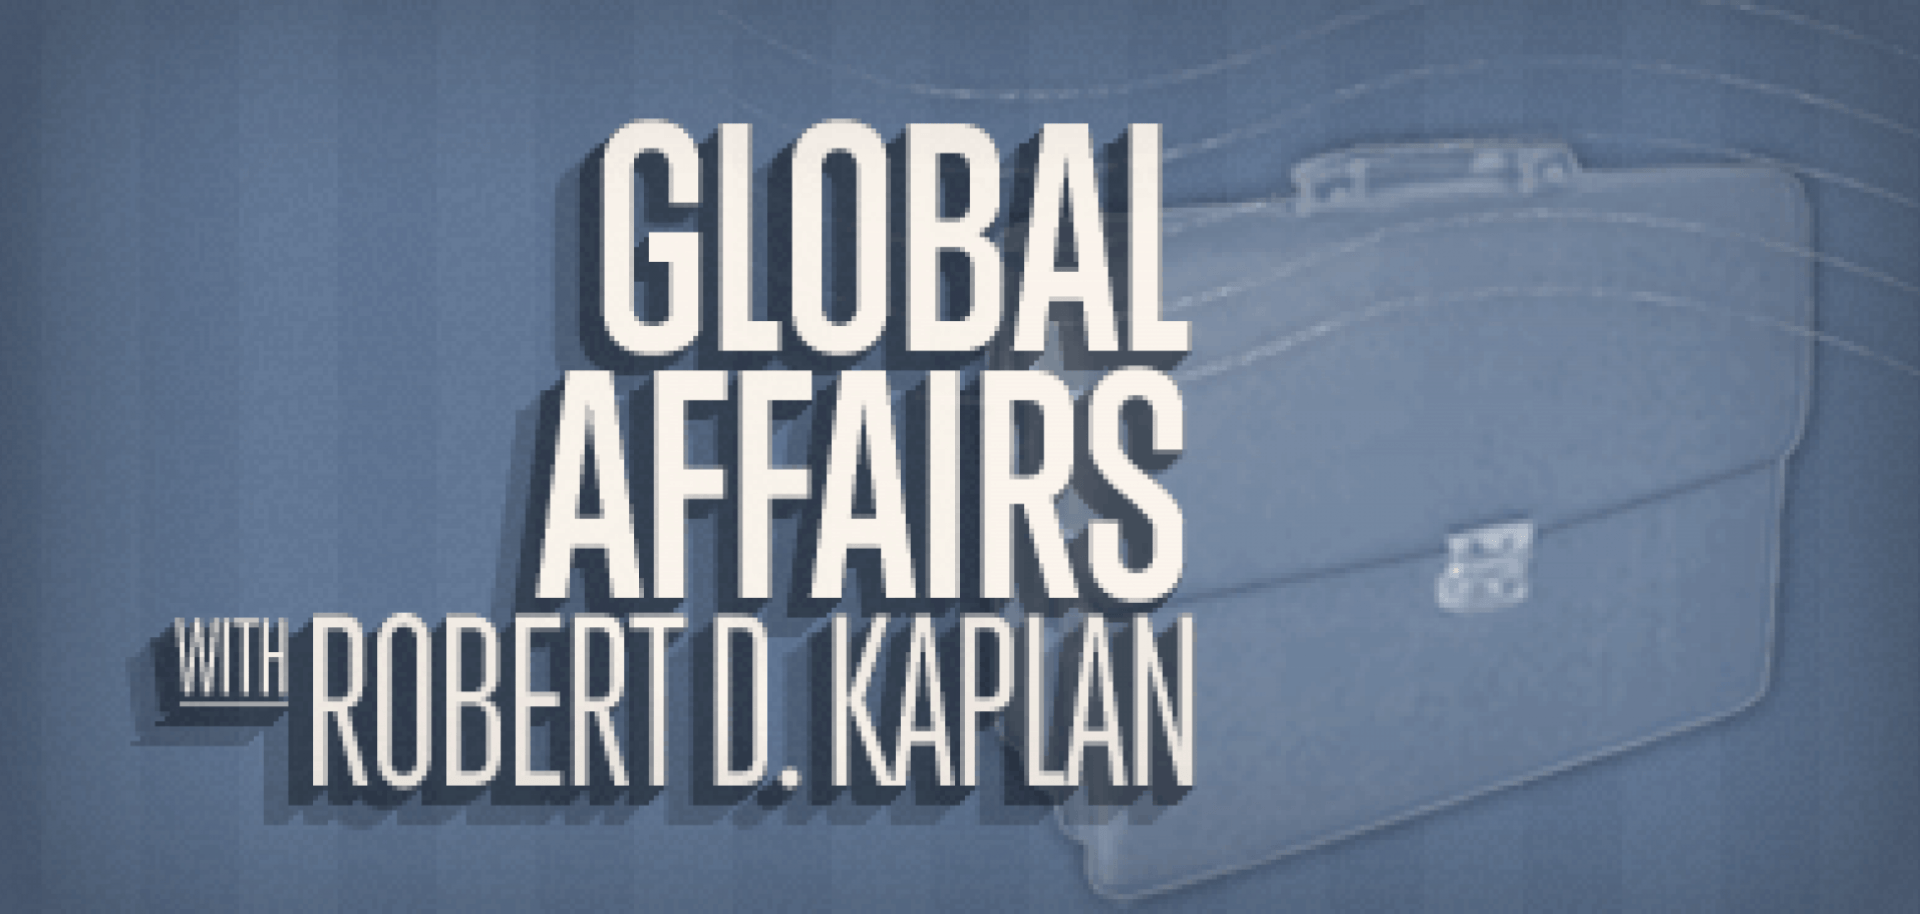 Global Affairs with Robert D. Kaplan